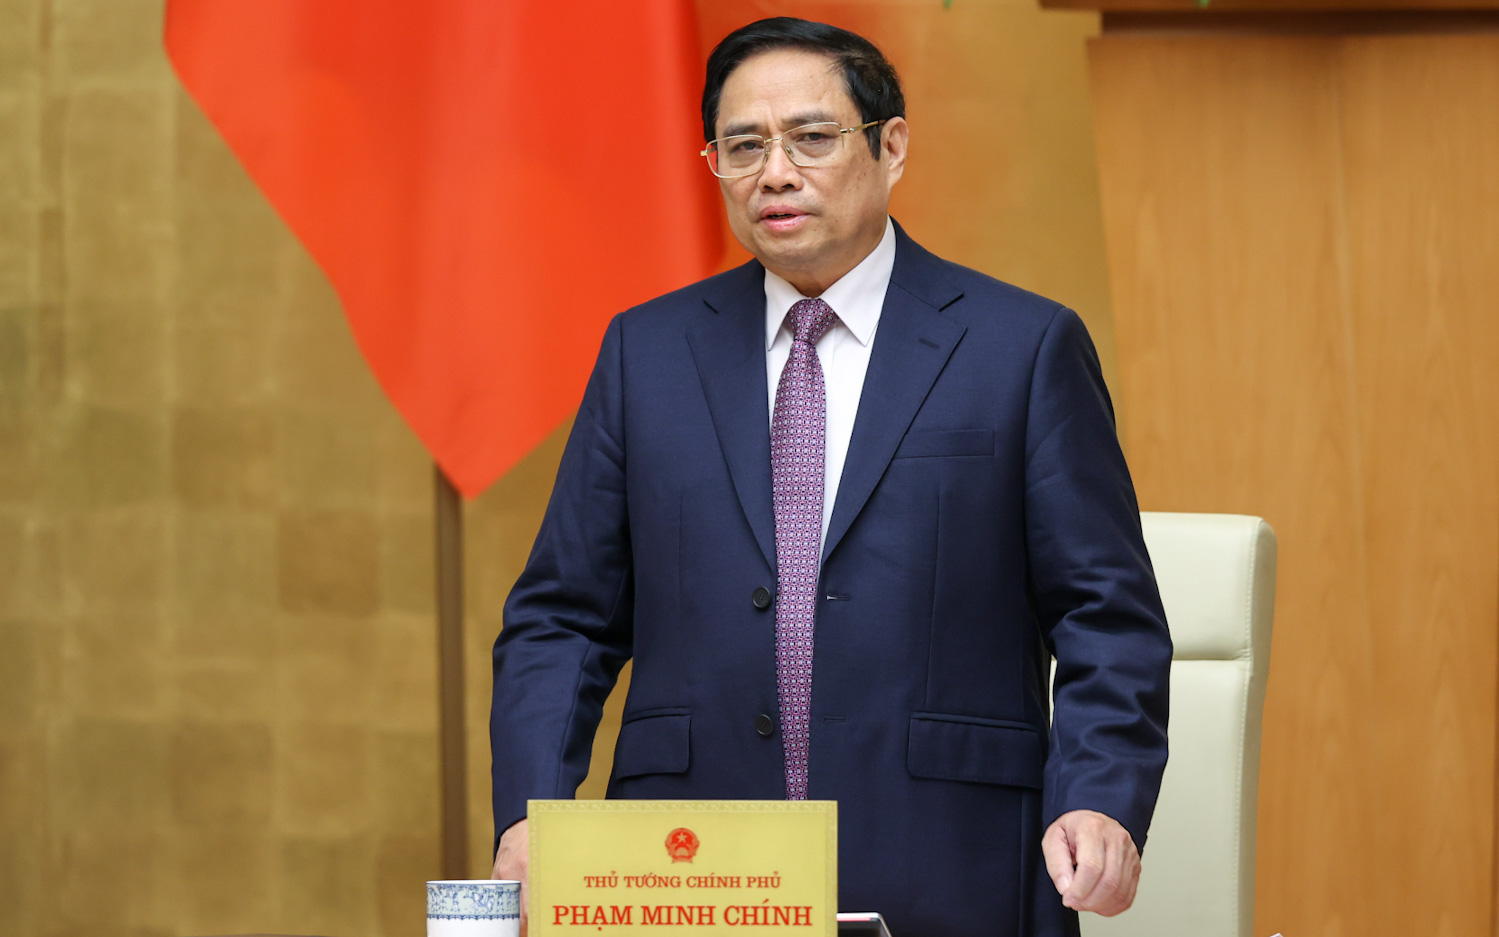 Thủ tướng Phạm Minh Chính: Tình hình ở Ukraine ảnh hưởng đến kinh tế, xã hội, chính trị, quốc phòng, an ninh trên toàn cầu